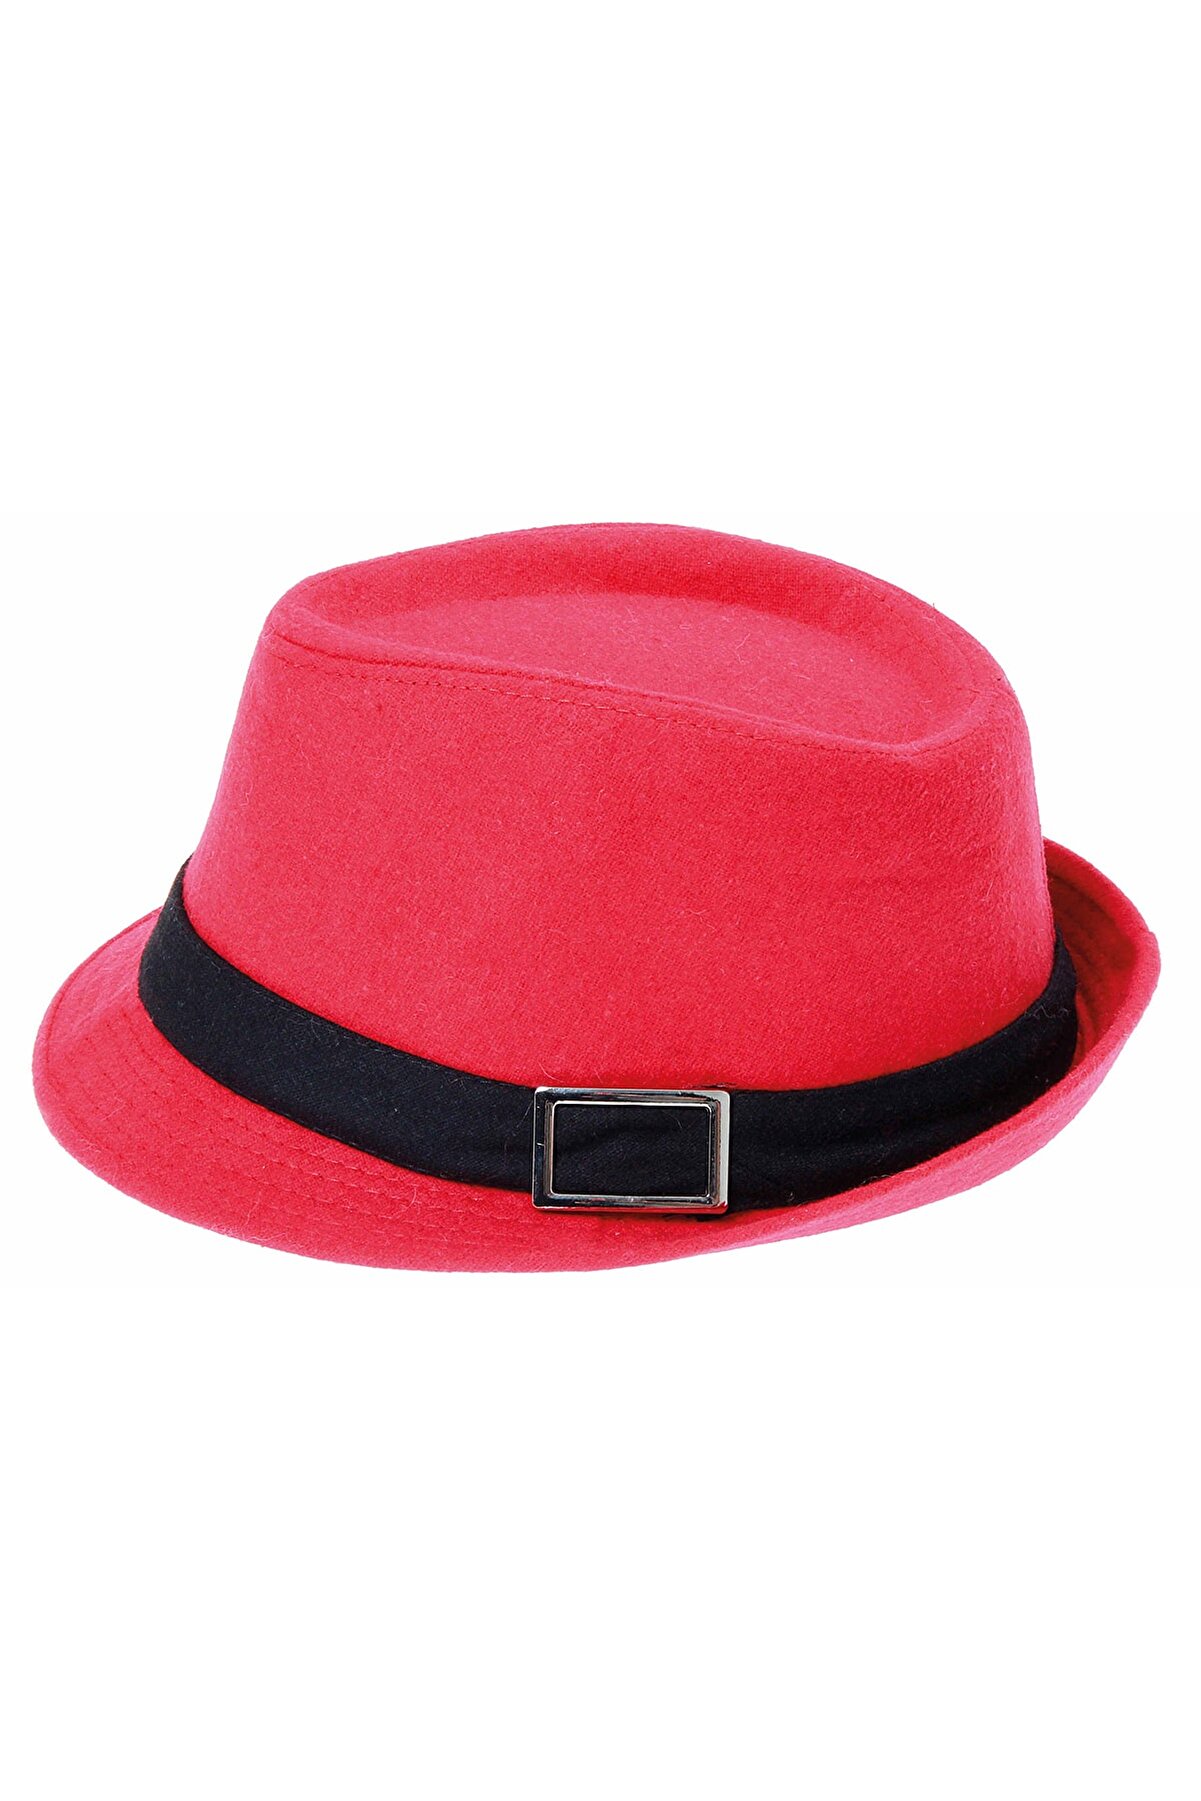 Bay Şapkacı Kaşe Kadın Kırmızı Fötr Şapka 4789